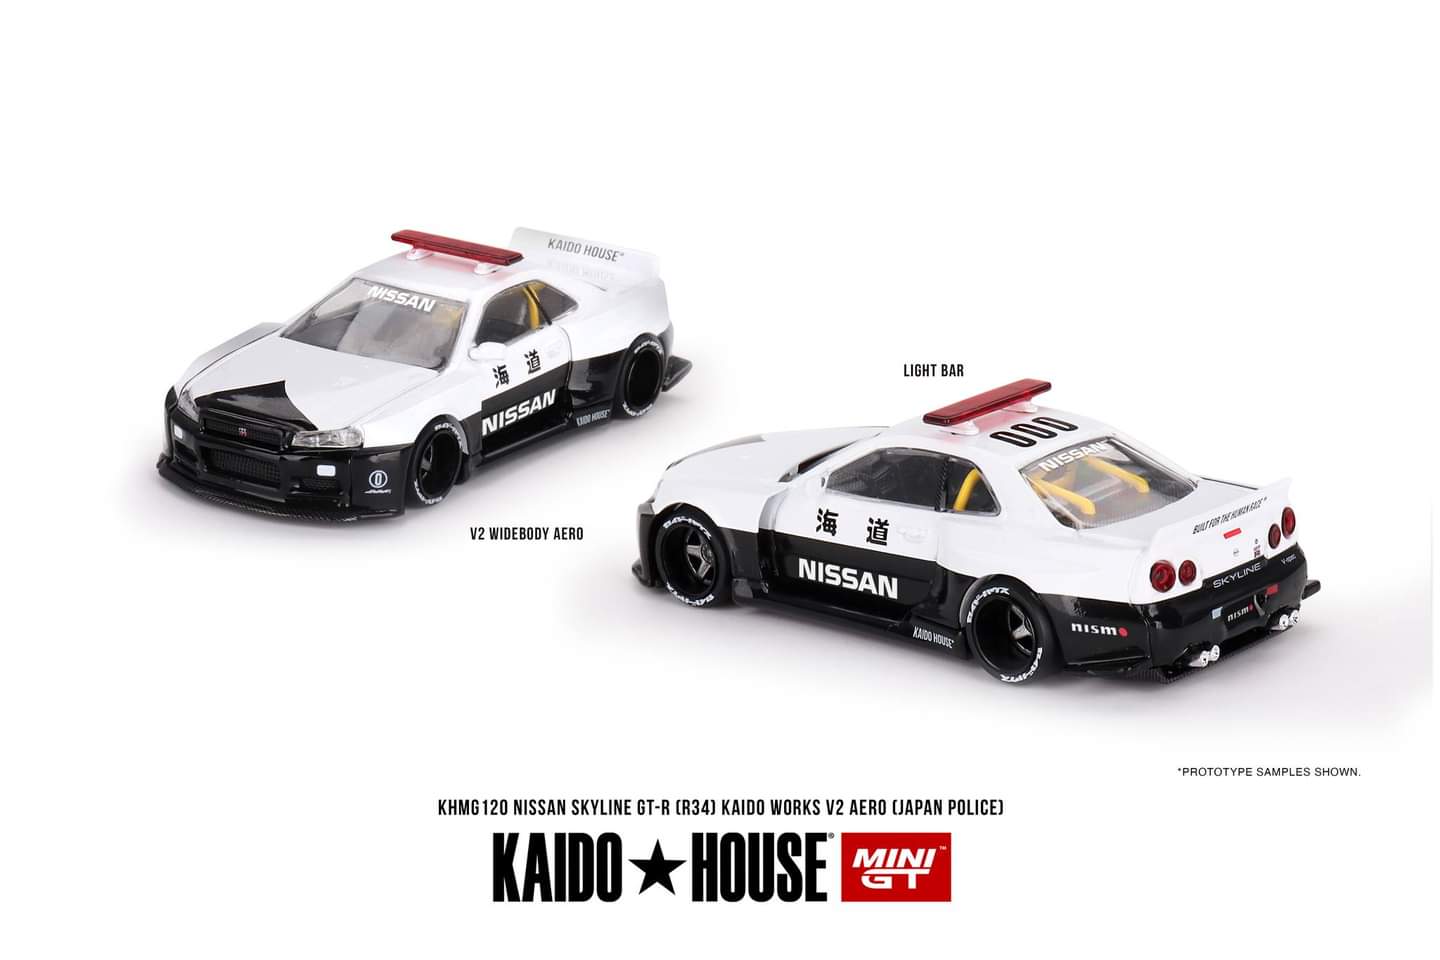 [Pre-Order] Kaido House x Mini GT 1:64 Nissan Skyline GT-R R34 Kaido Works (V2 Aero) Police